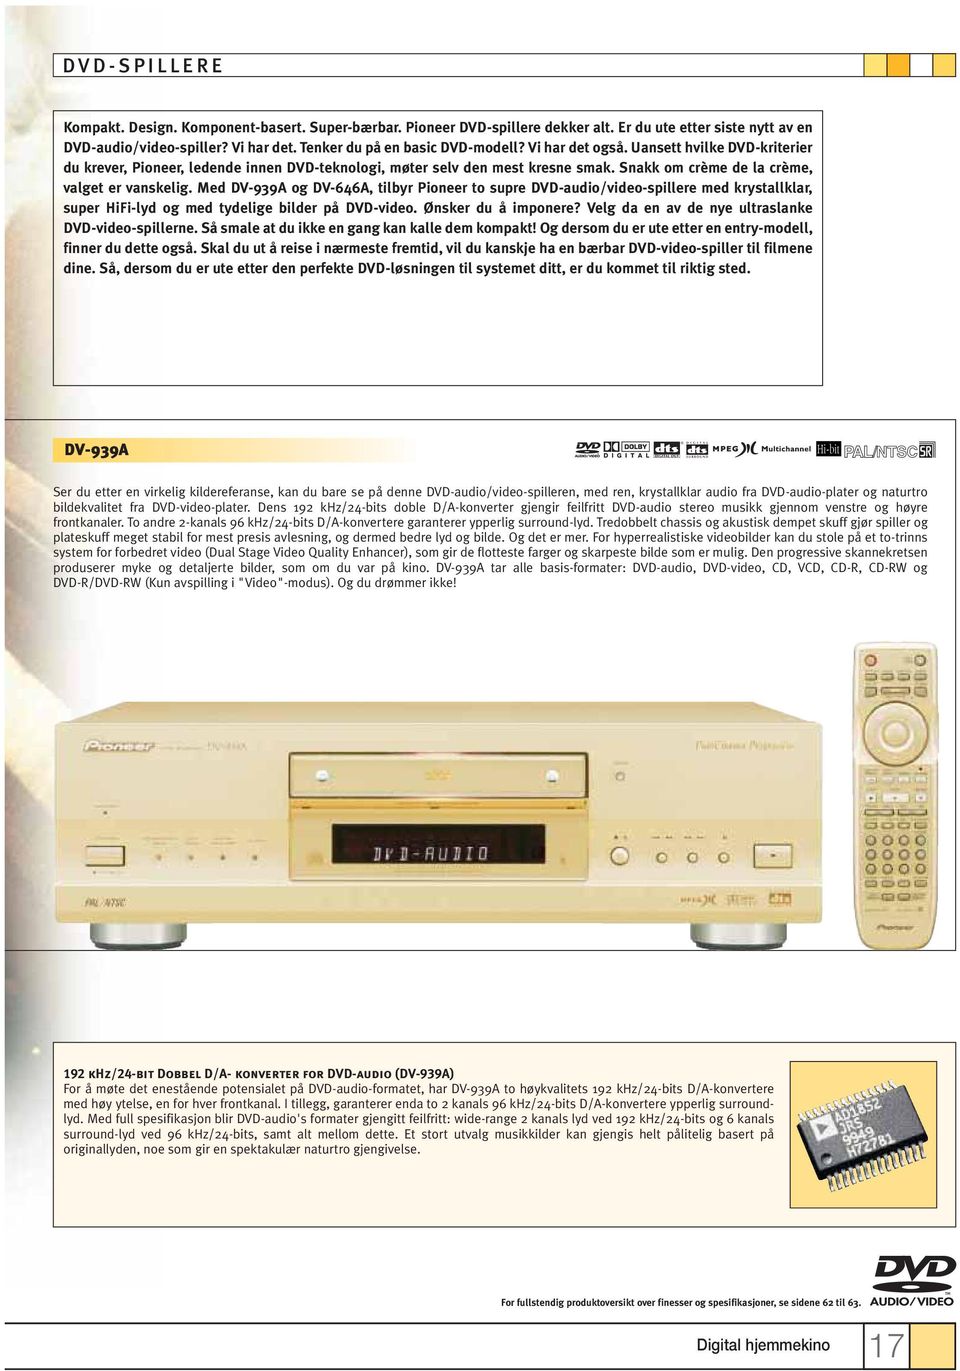 Med DV-939A og DV-646A, tilbyr Pioneer to supre DVD-audio/video-spillere med krystallklar, super HiFi-lyd og med tydelige bilder på DVD-video. Ønsker du å imponere?